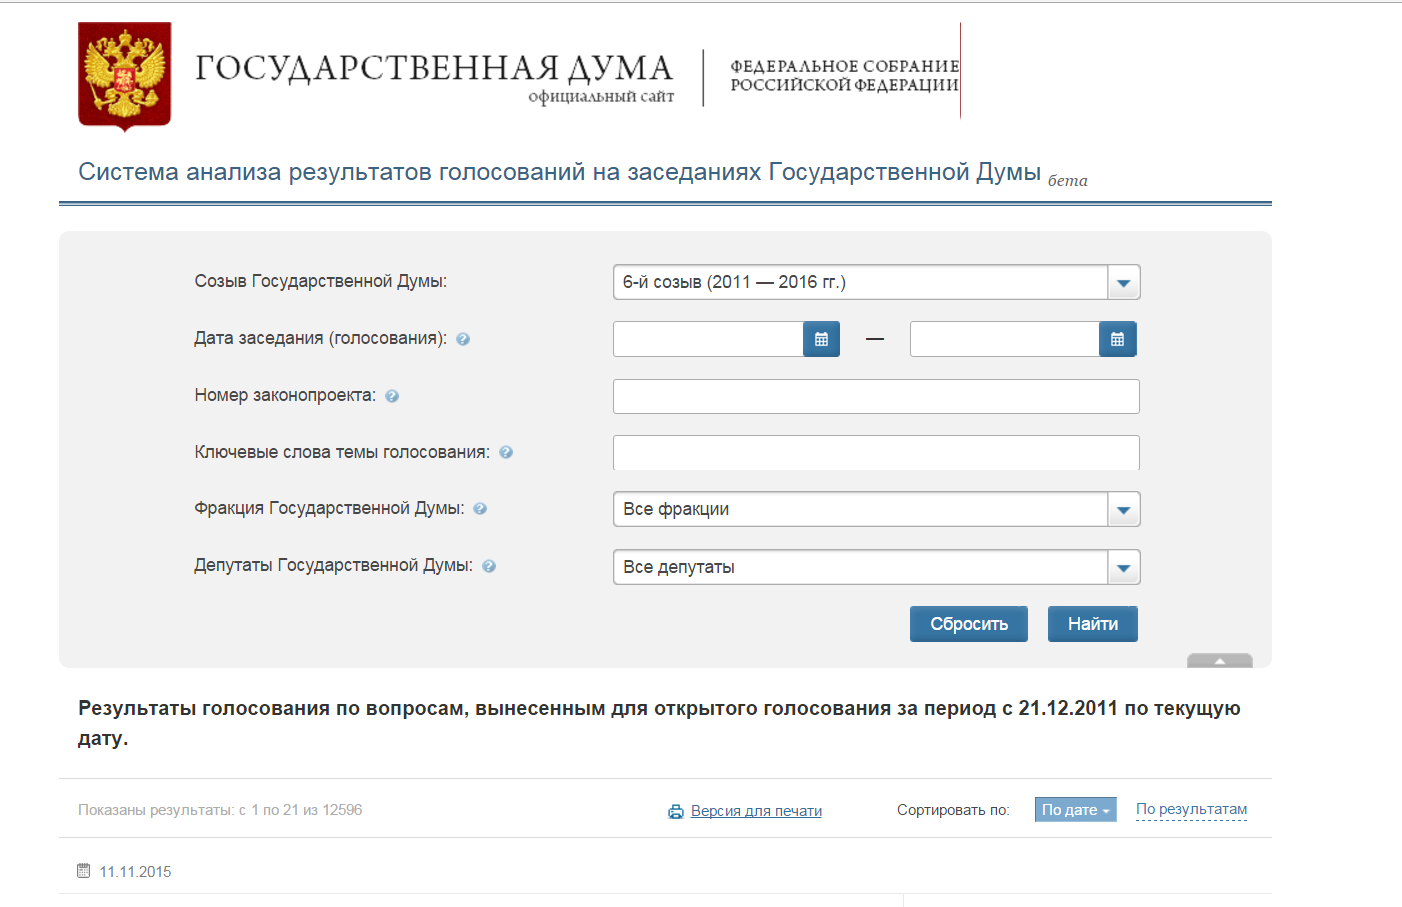 Ed gov ru голосование. Регистрационный номер законопроекта от Госдумы. Http://vote.Duma.gov.ru/vote/117112.